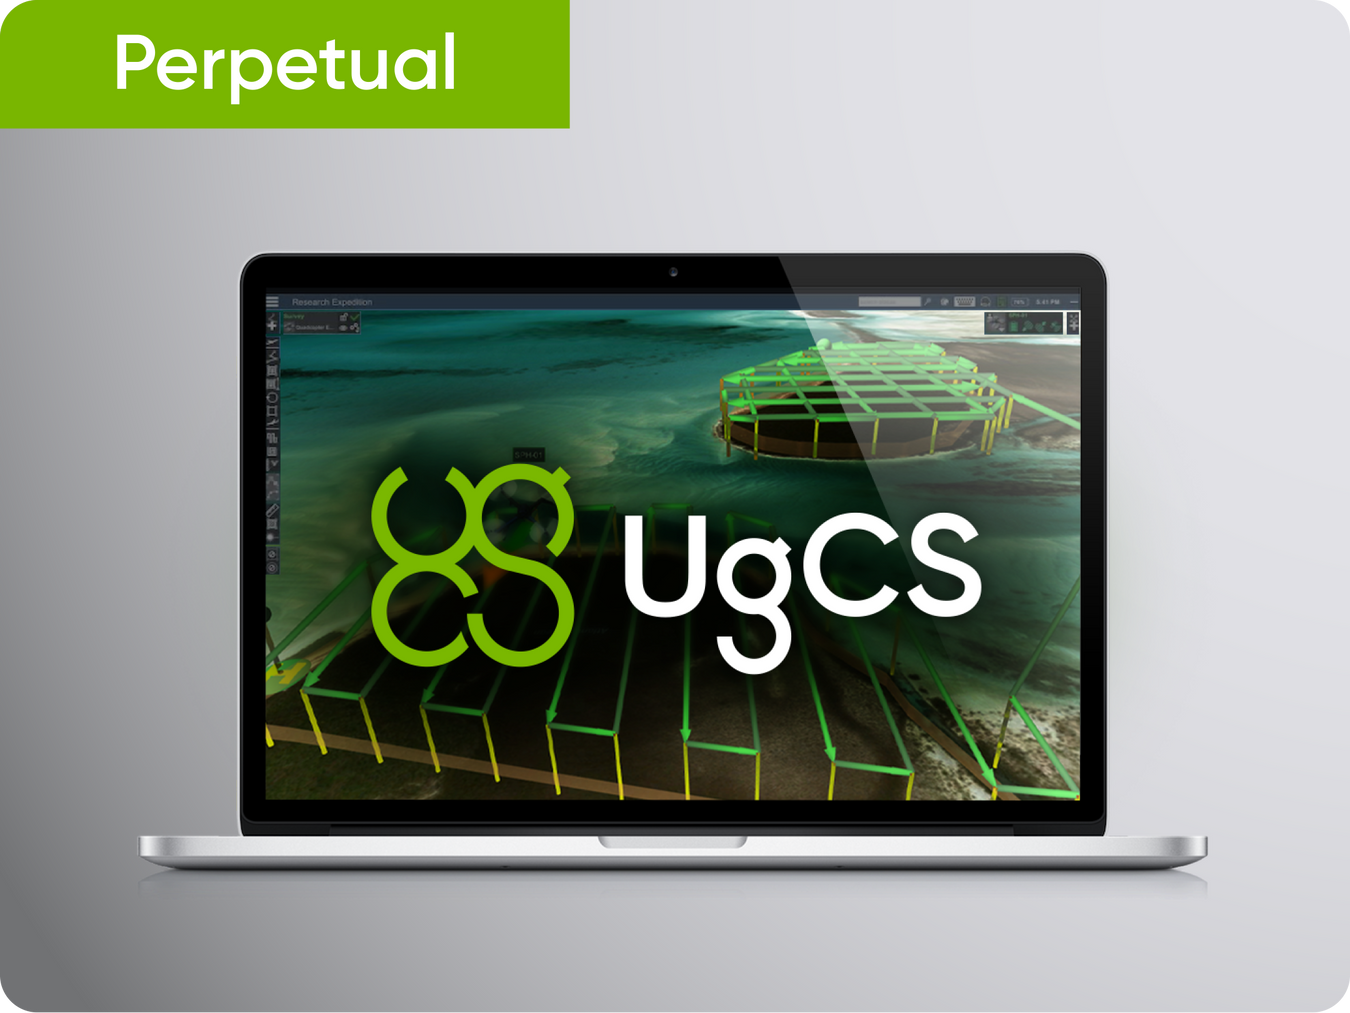 UgCS perpetual licenses